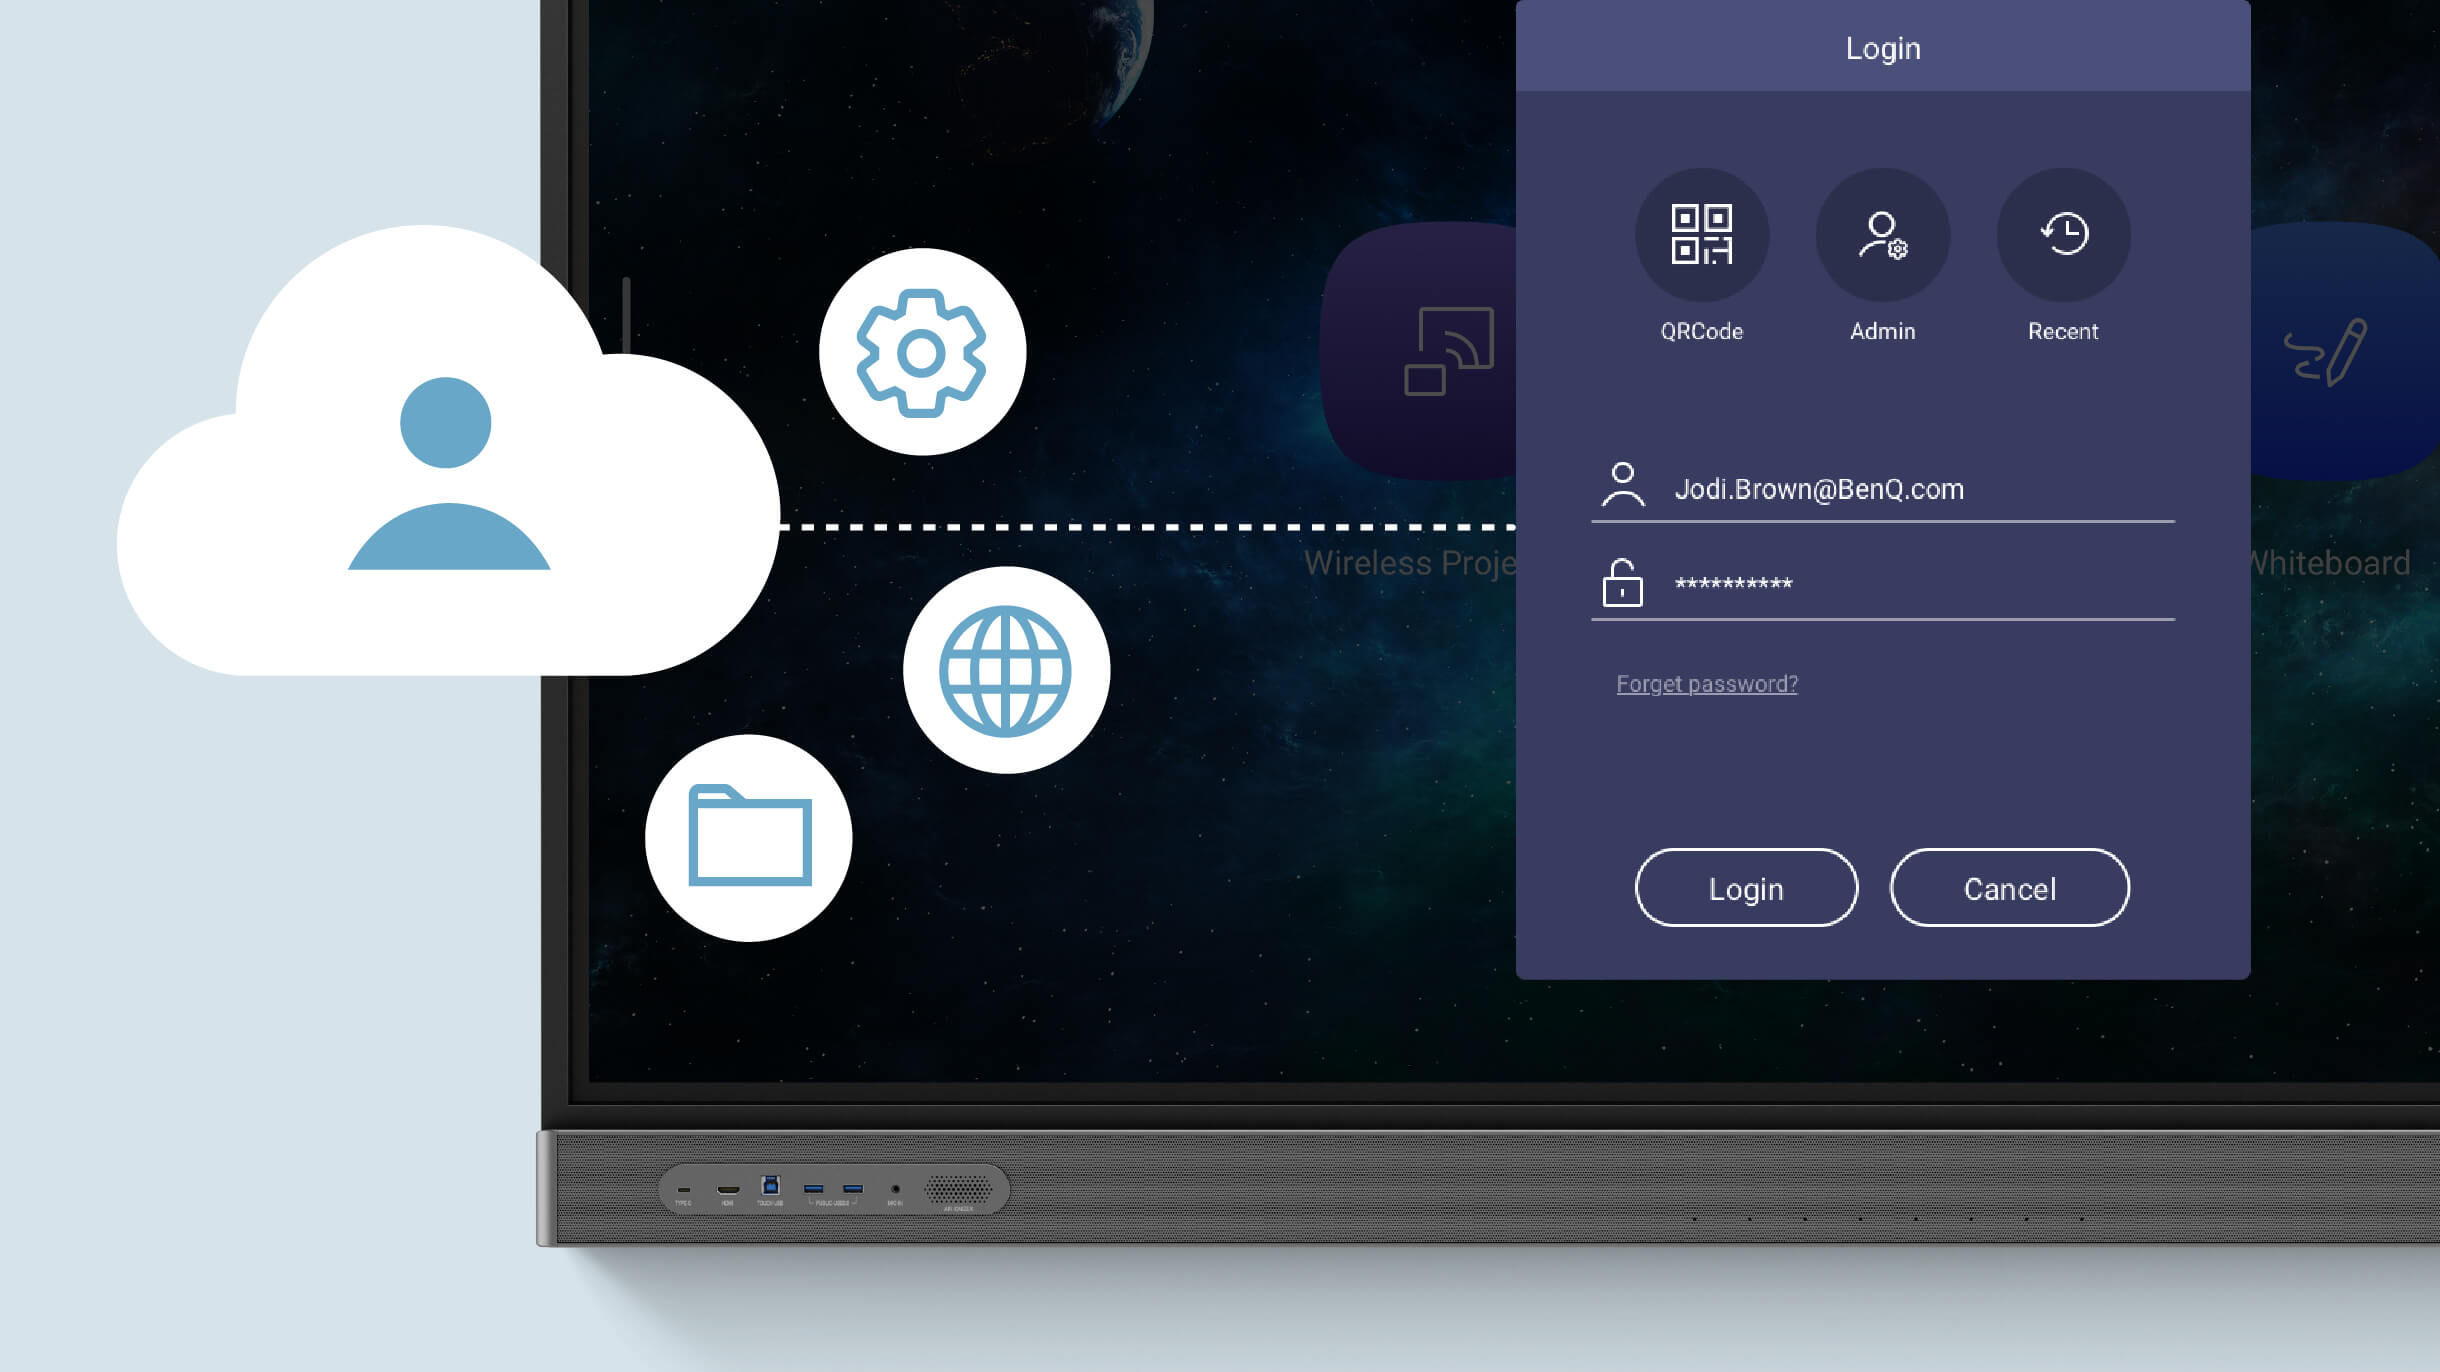 Anmeldung über die Cloud beim interaktiven BenQ Display